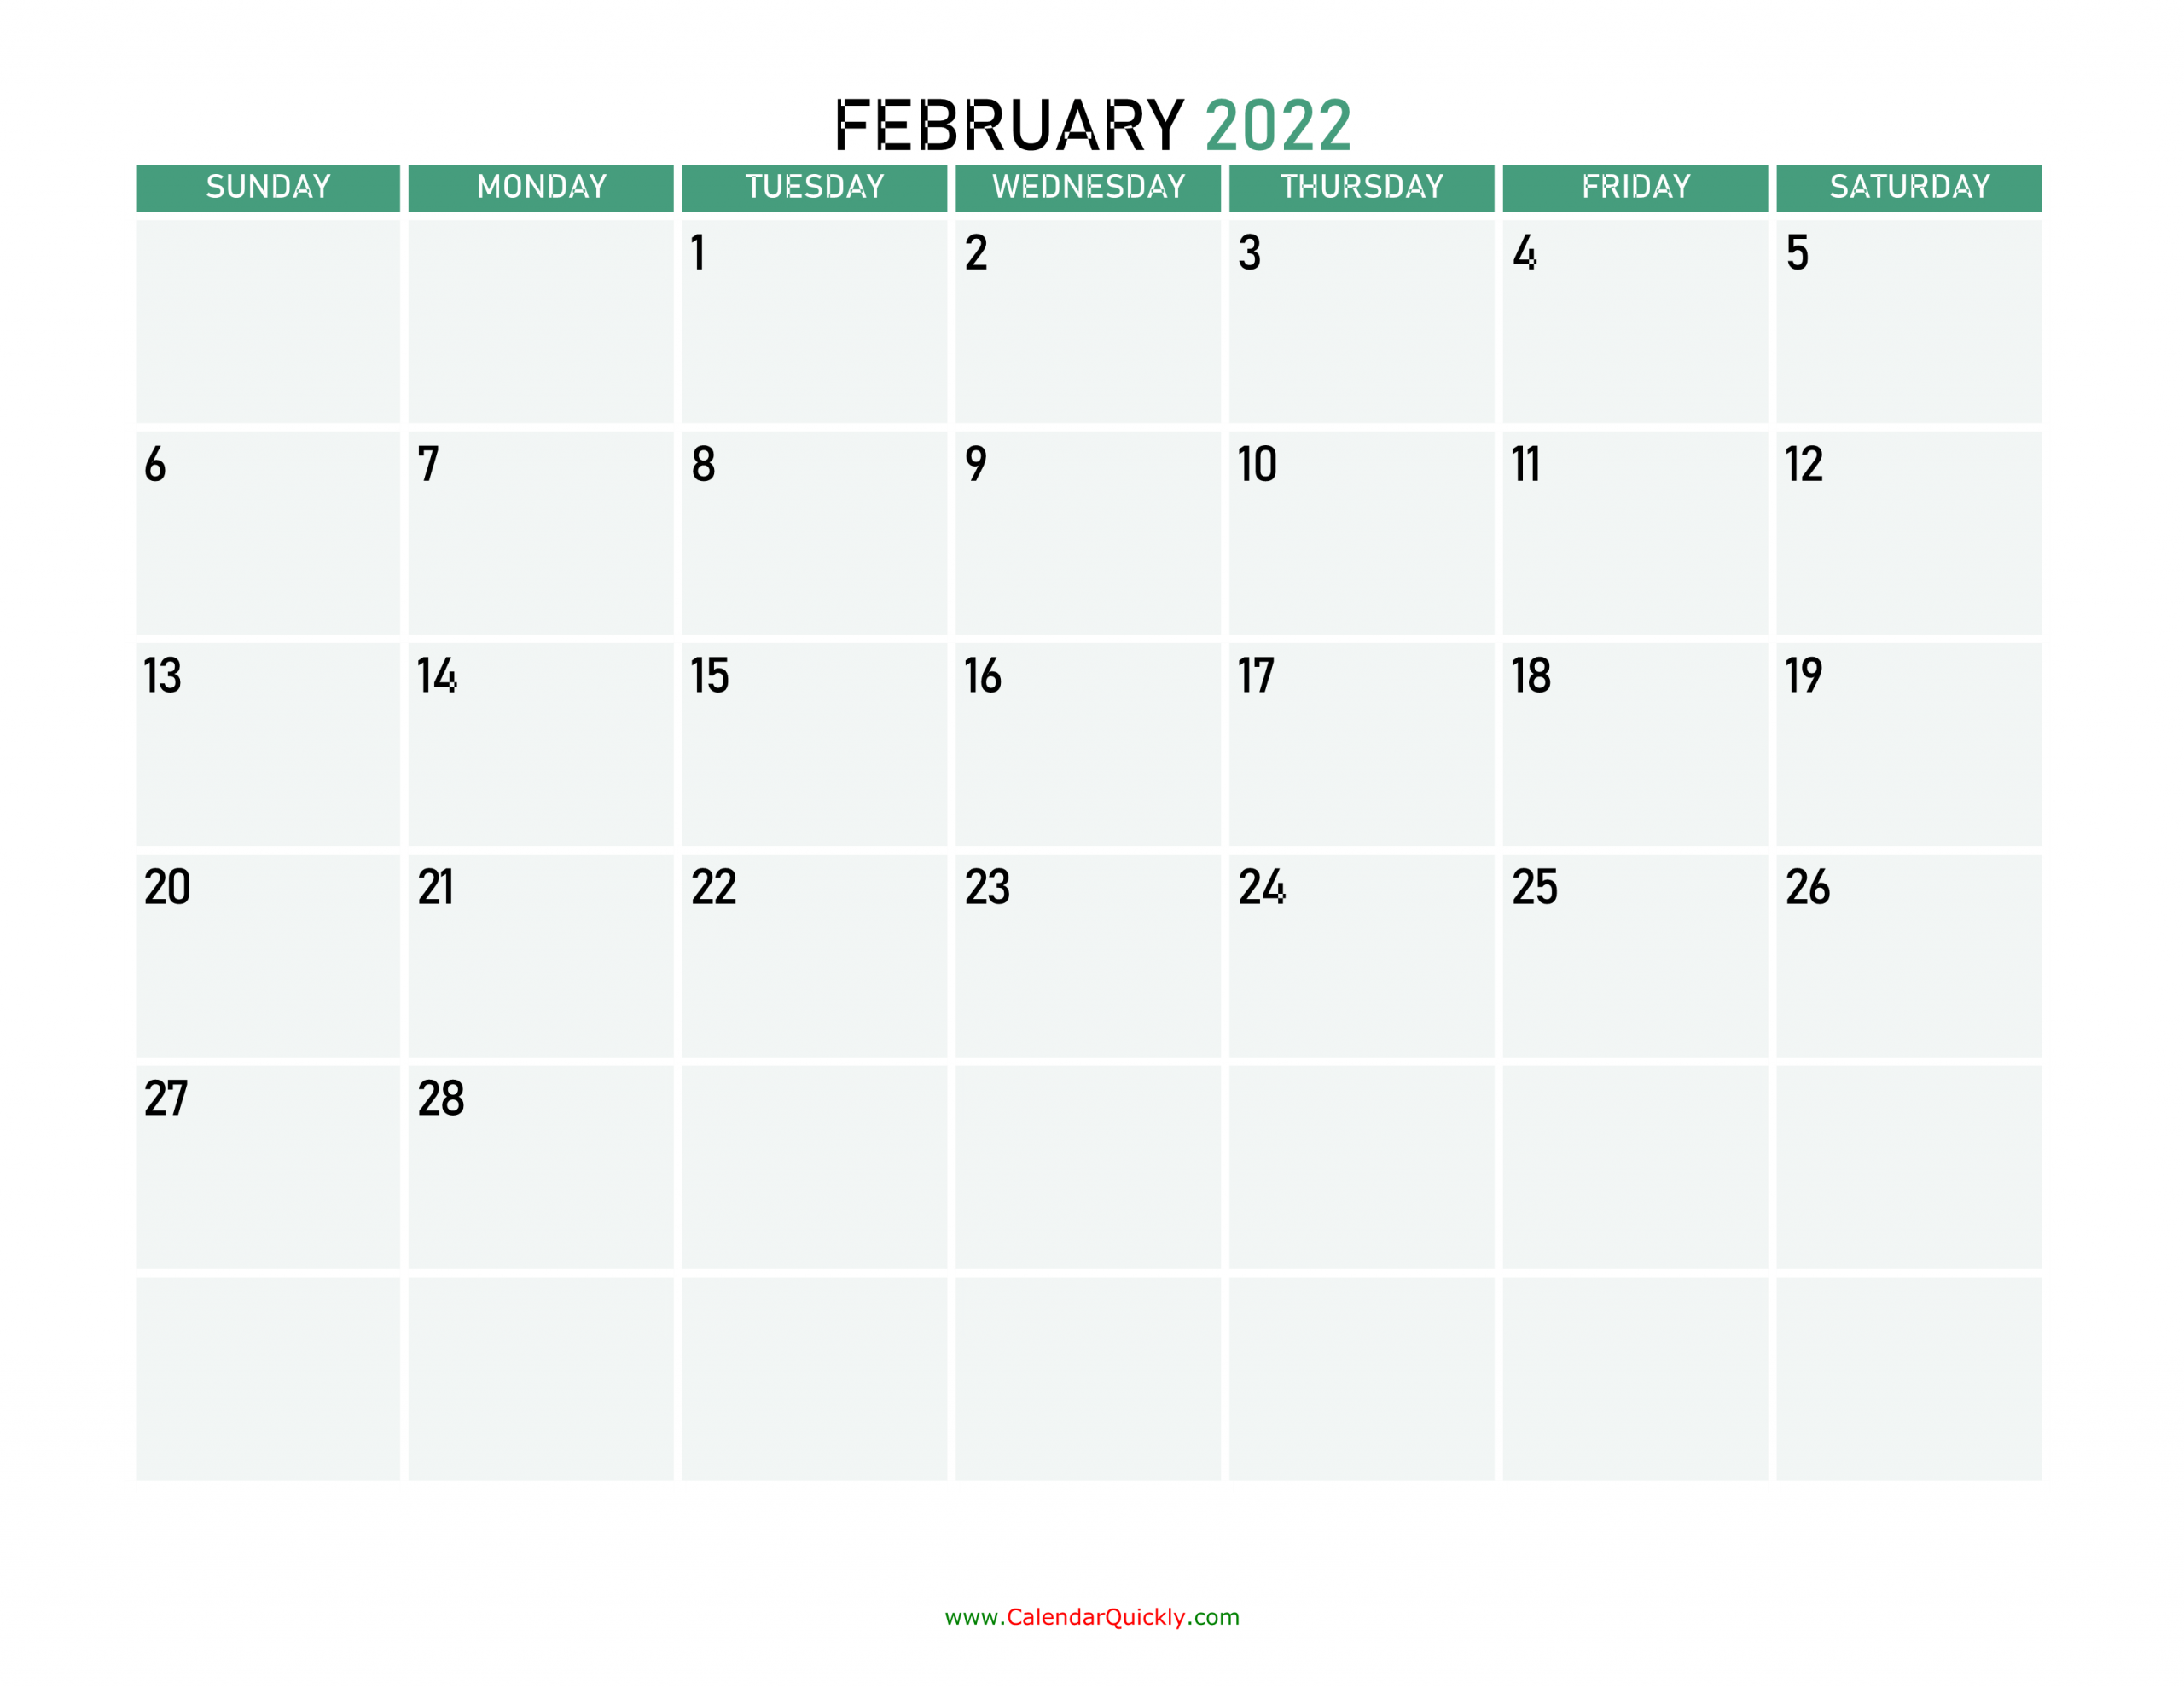 february 2022 calendars calendar quickly